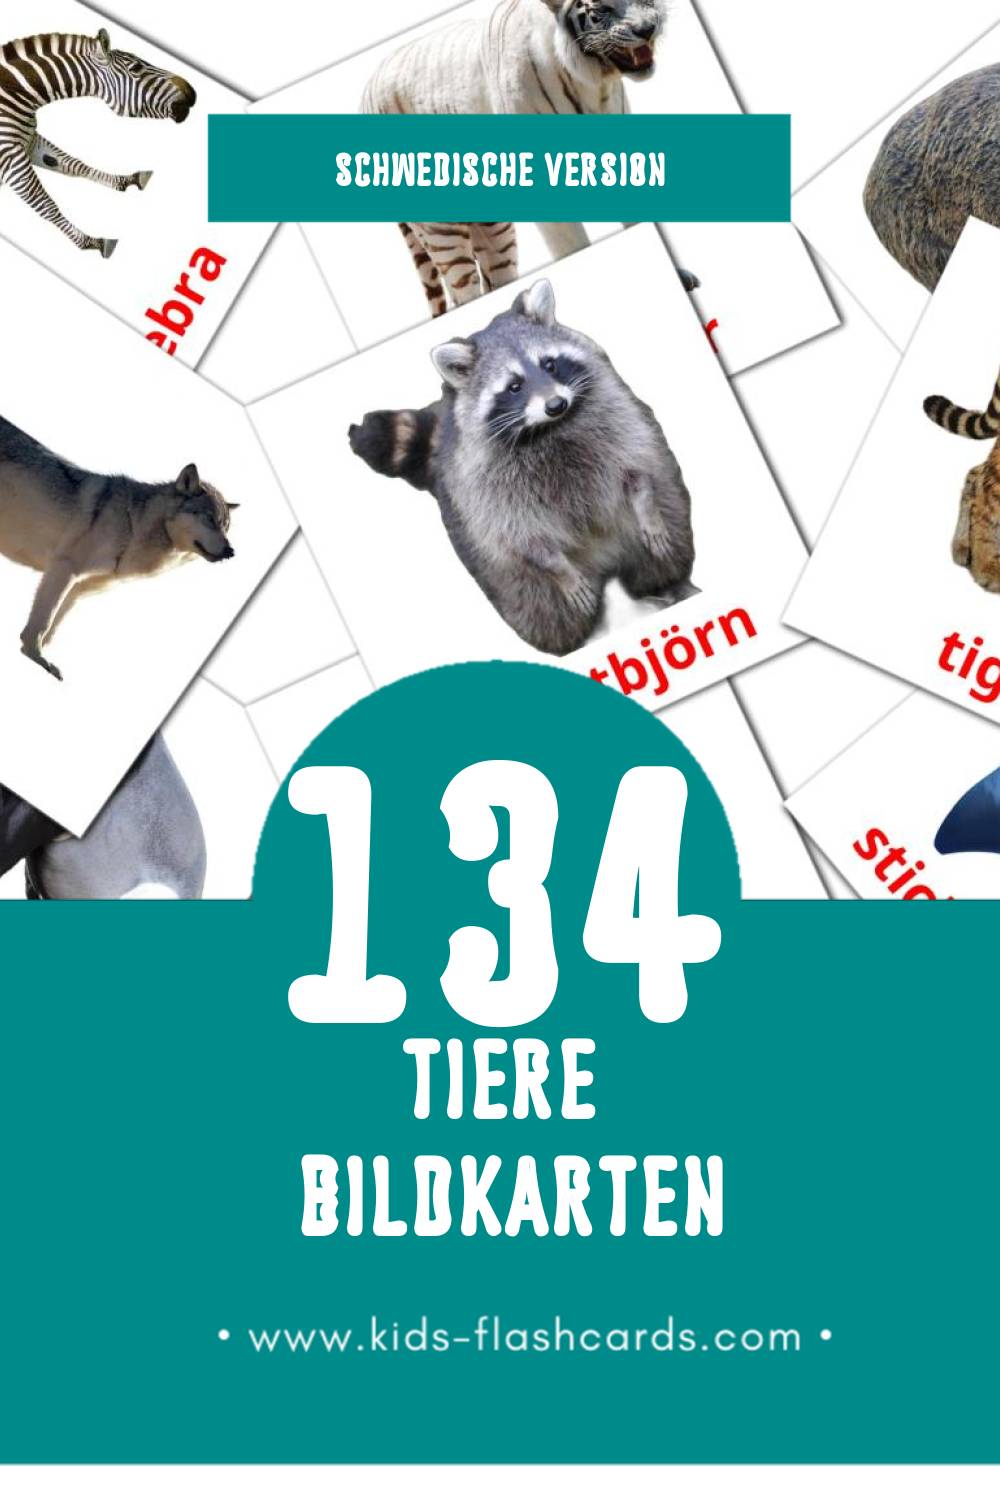 Visual Djur Flashcards für Kleinkinder (134 Karten in Schwedisch)